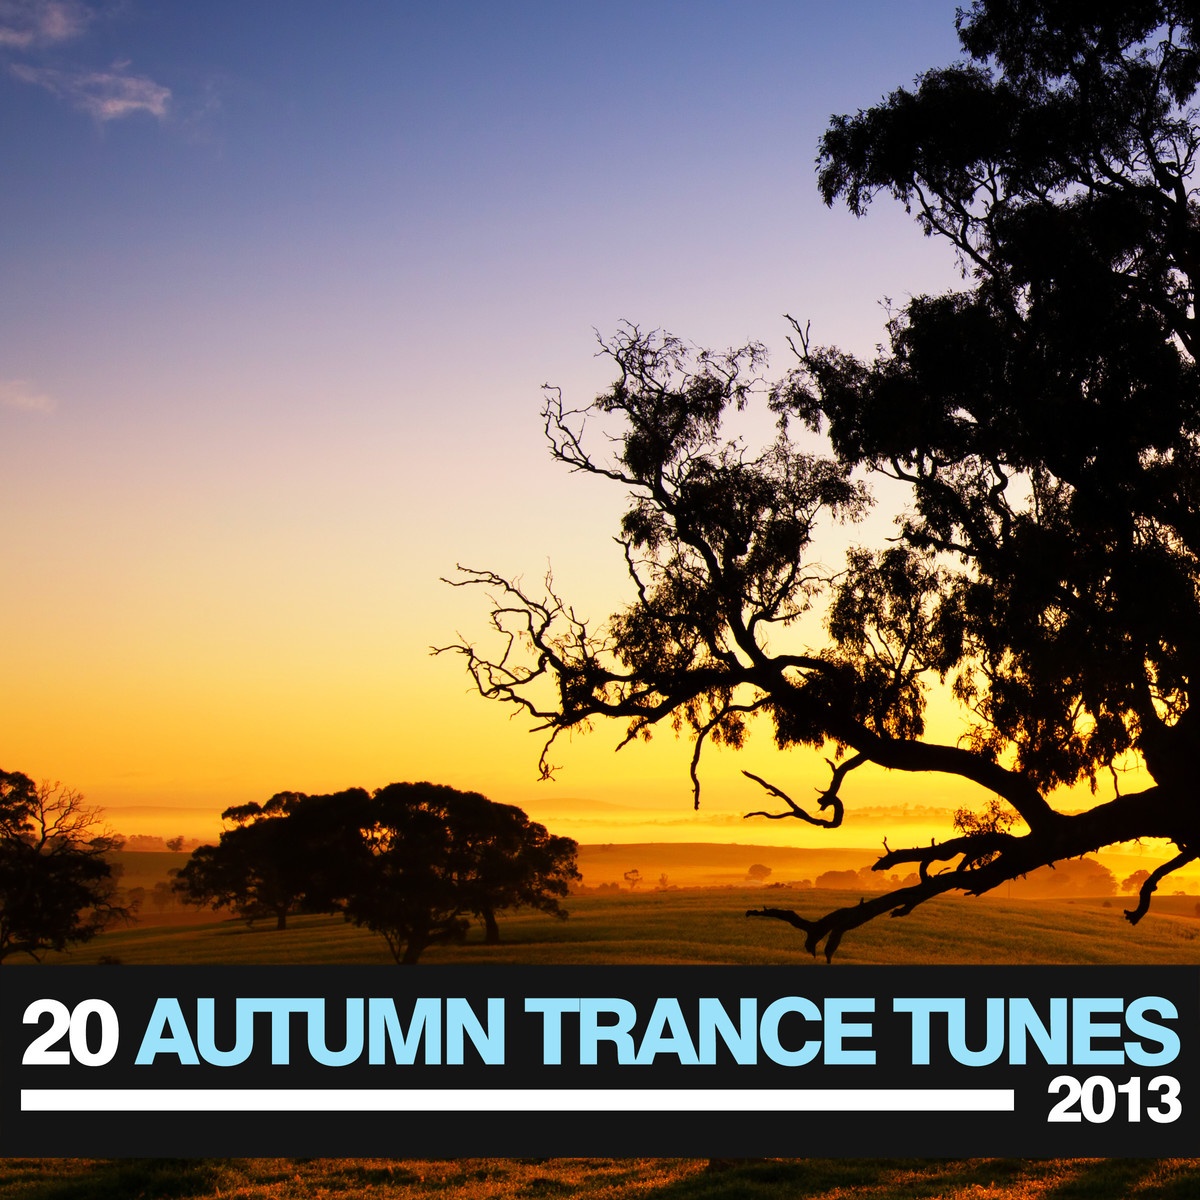 20 Autumn Trance Tunes 2013